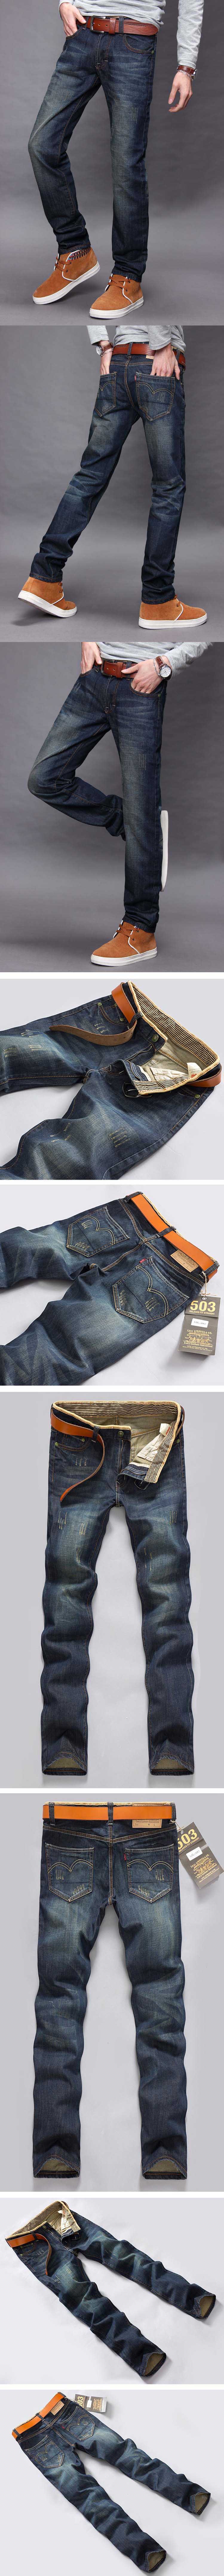 cari celana jeans pria model panjang ? pfp menyediakan celana jeans pria terlengkapdan model terbaru , klik dan pesan online disini.